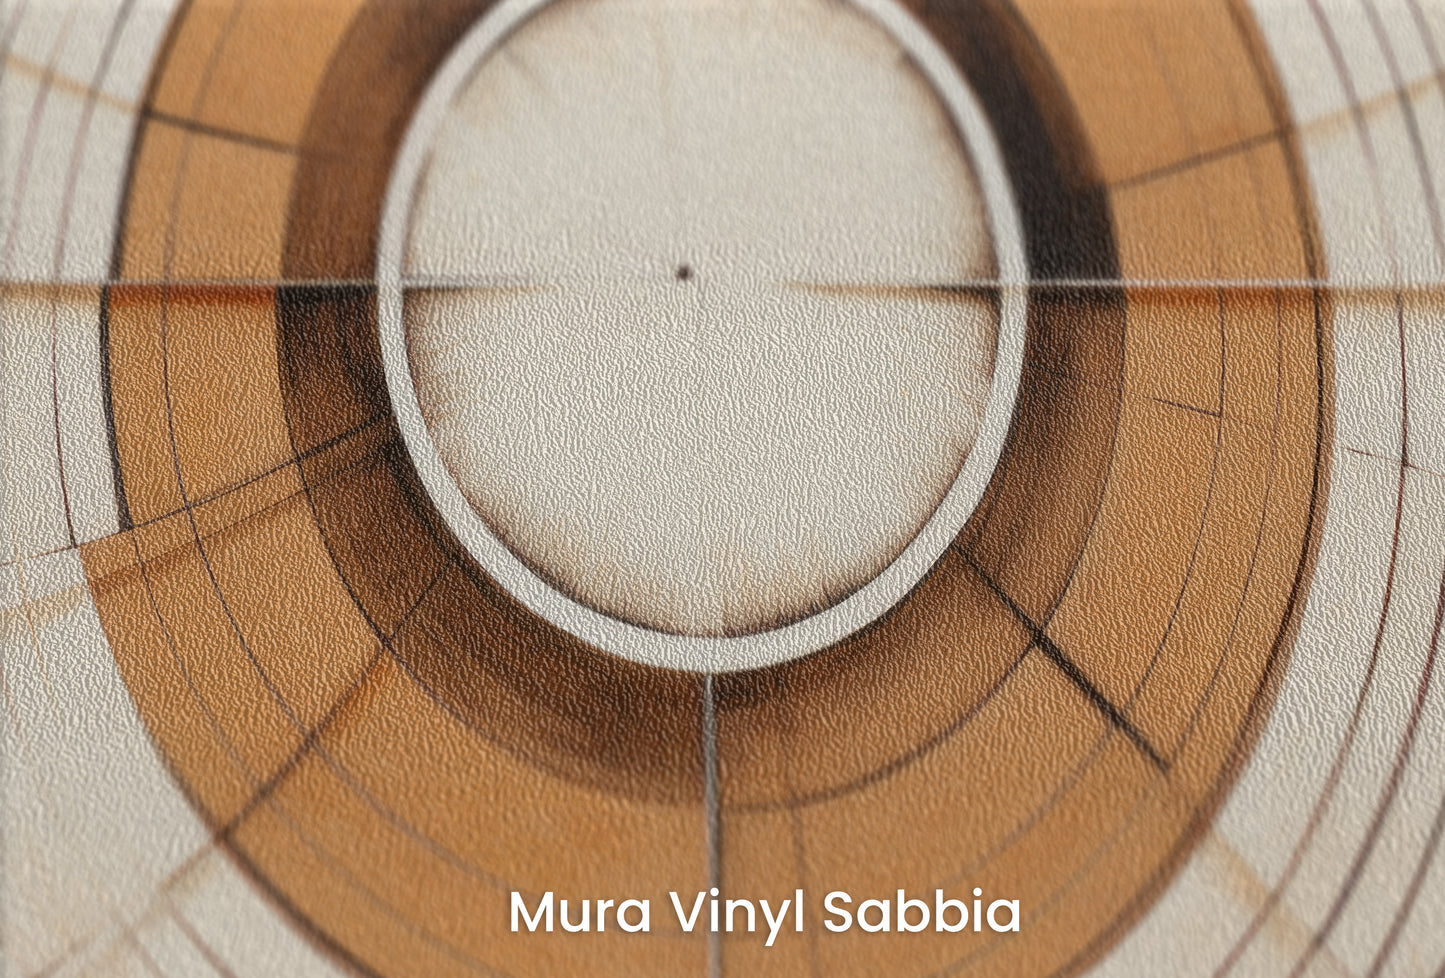 Zbliżenie na artystyczną fototapetę o nazwie ORBITAL GEO na podłożu Mura Vinyl Sabbia struktura grubego ziarna piasku.